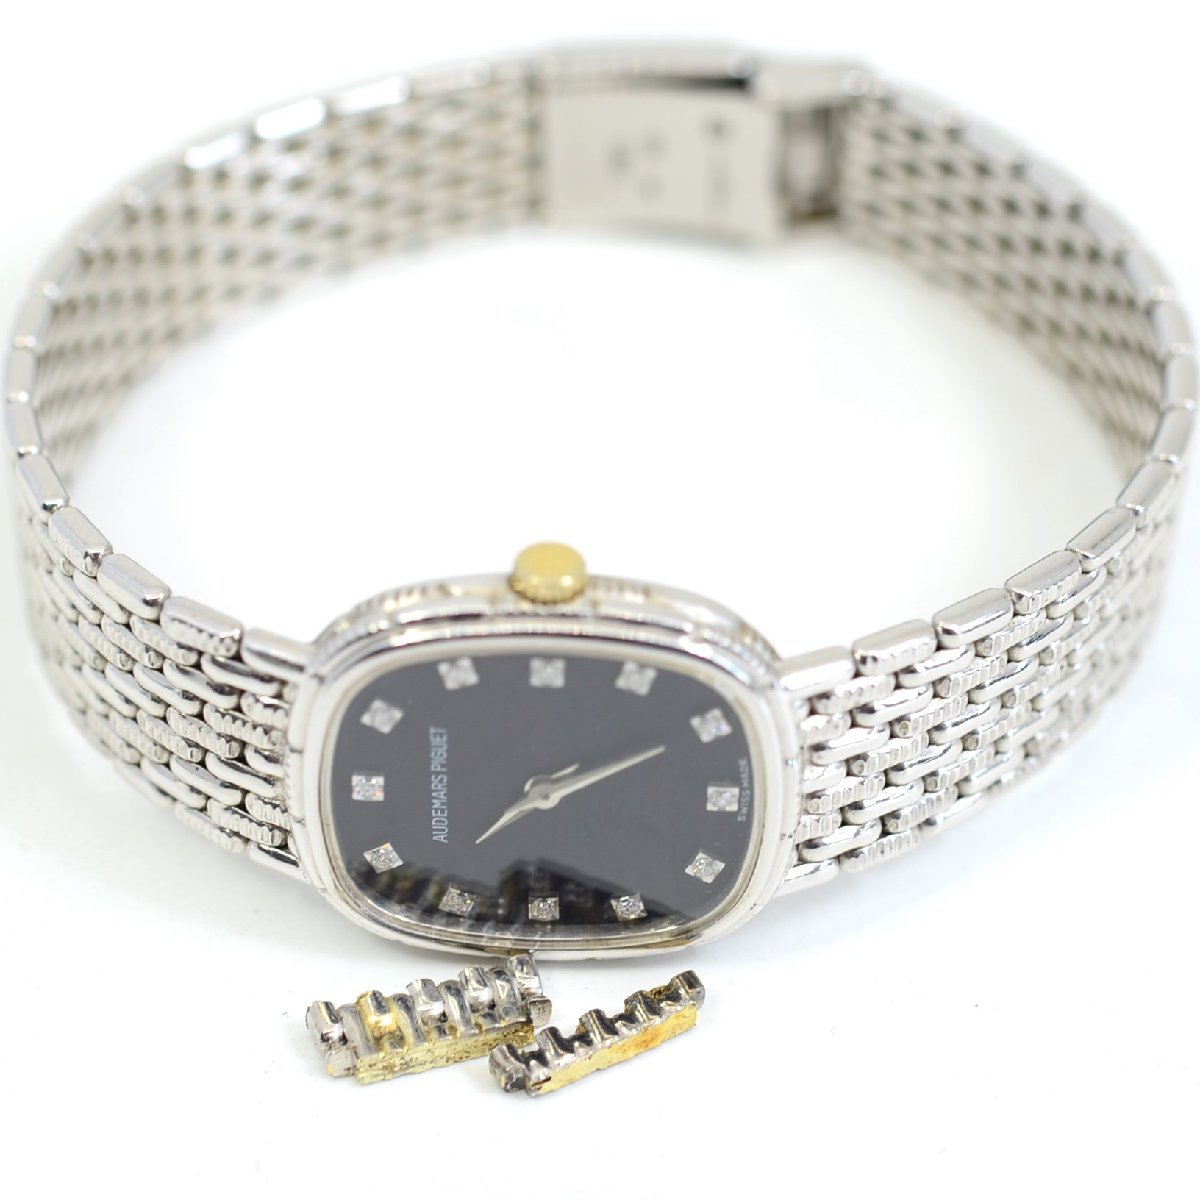 素敵な ダイヤモンド K18WG レディース腕時計 コブラ オーデマピゲ